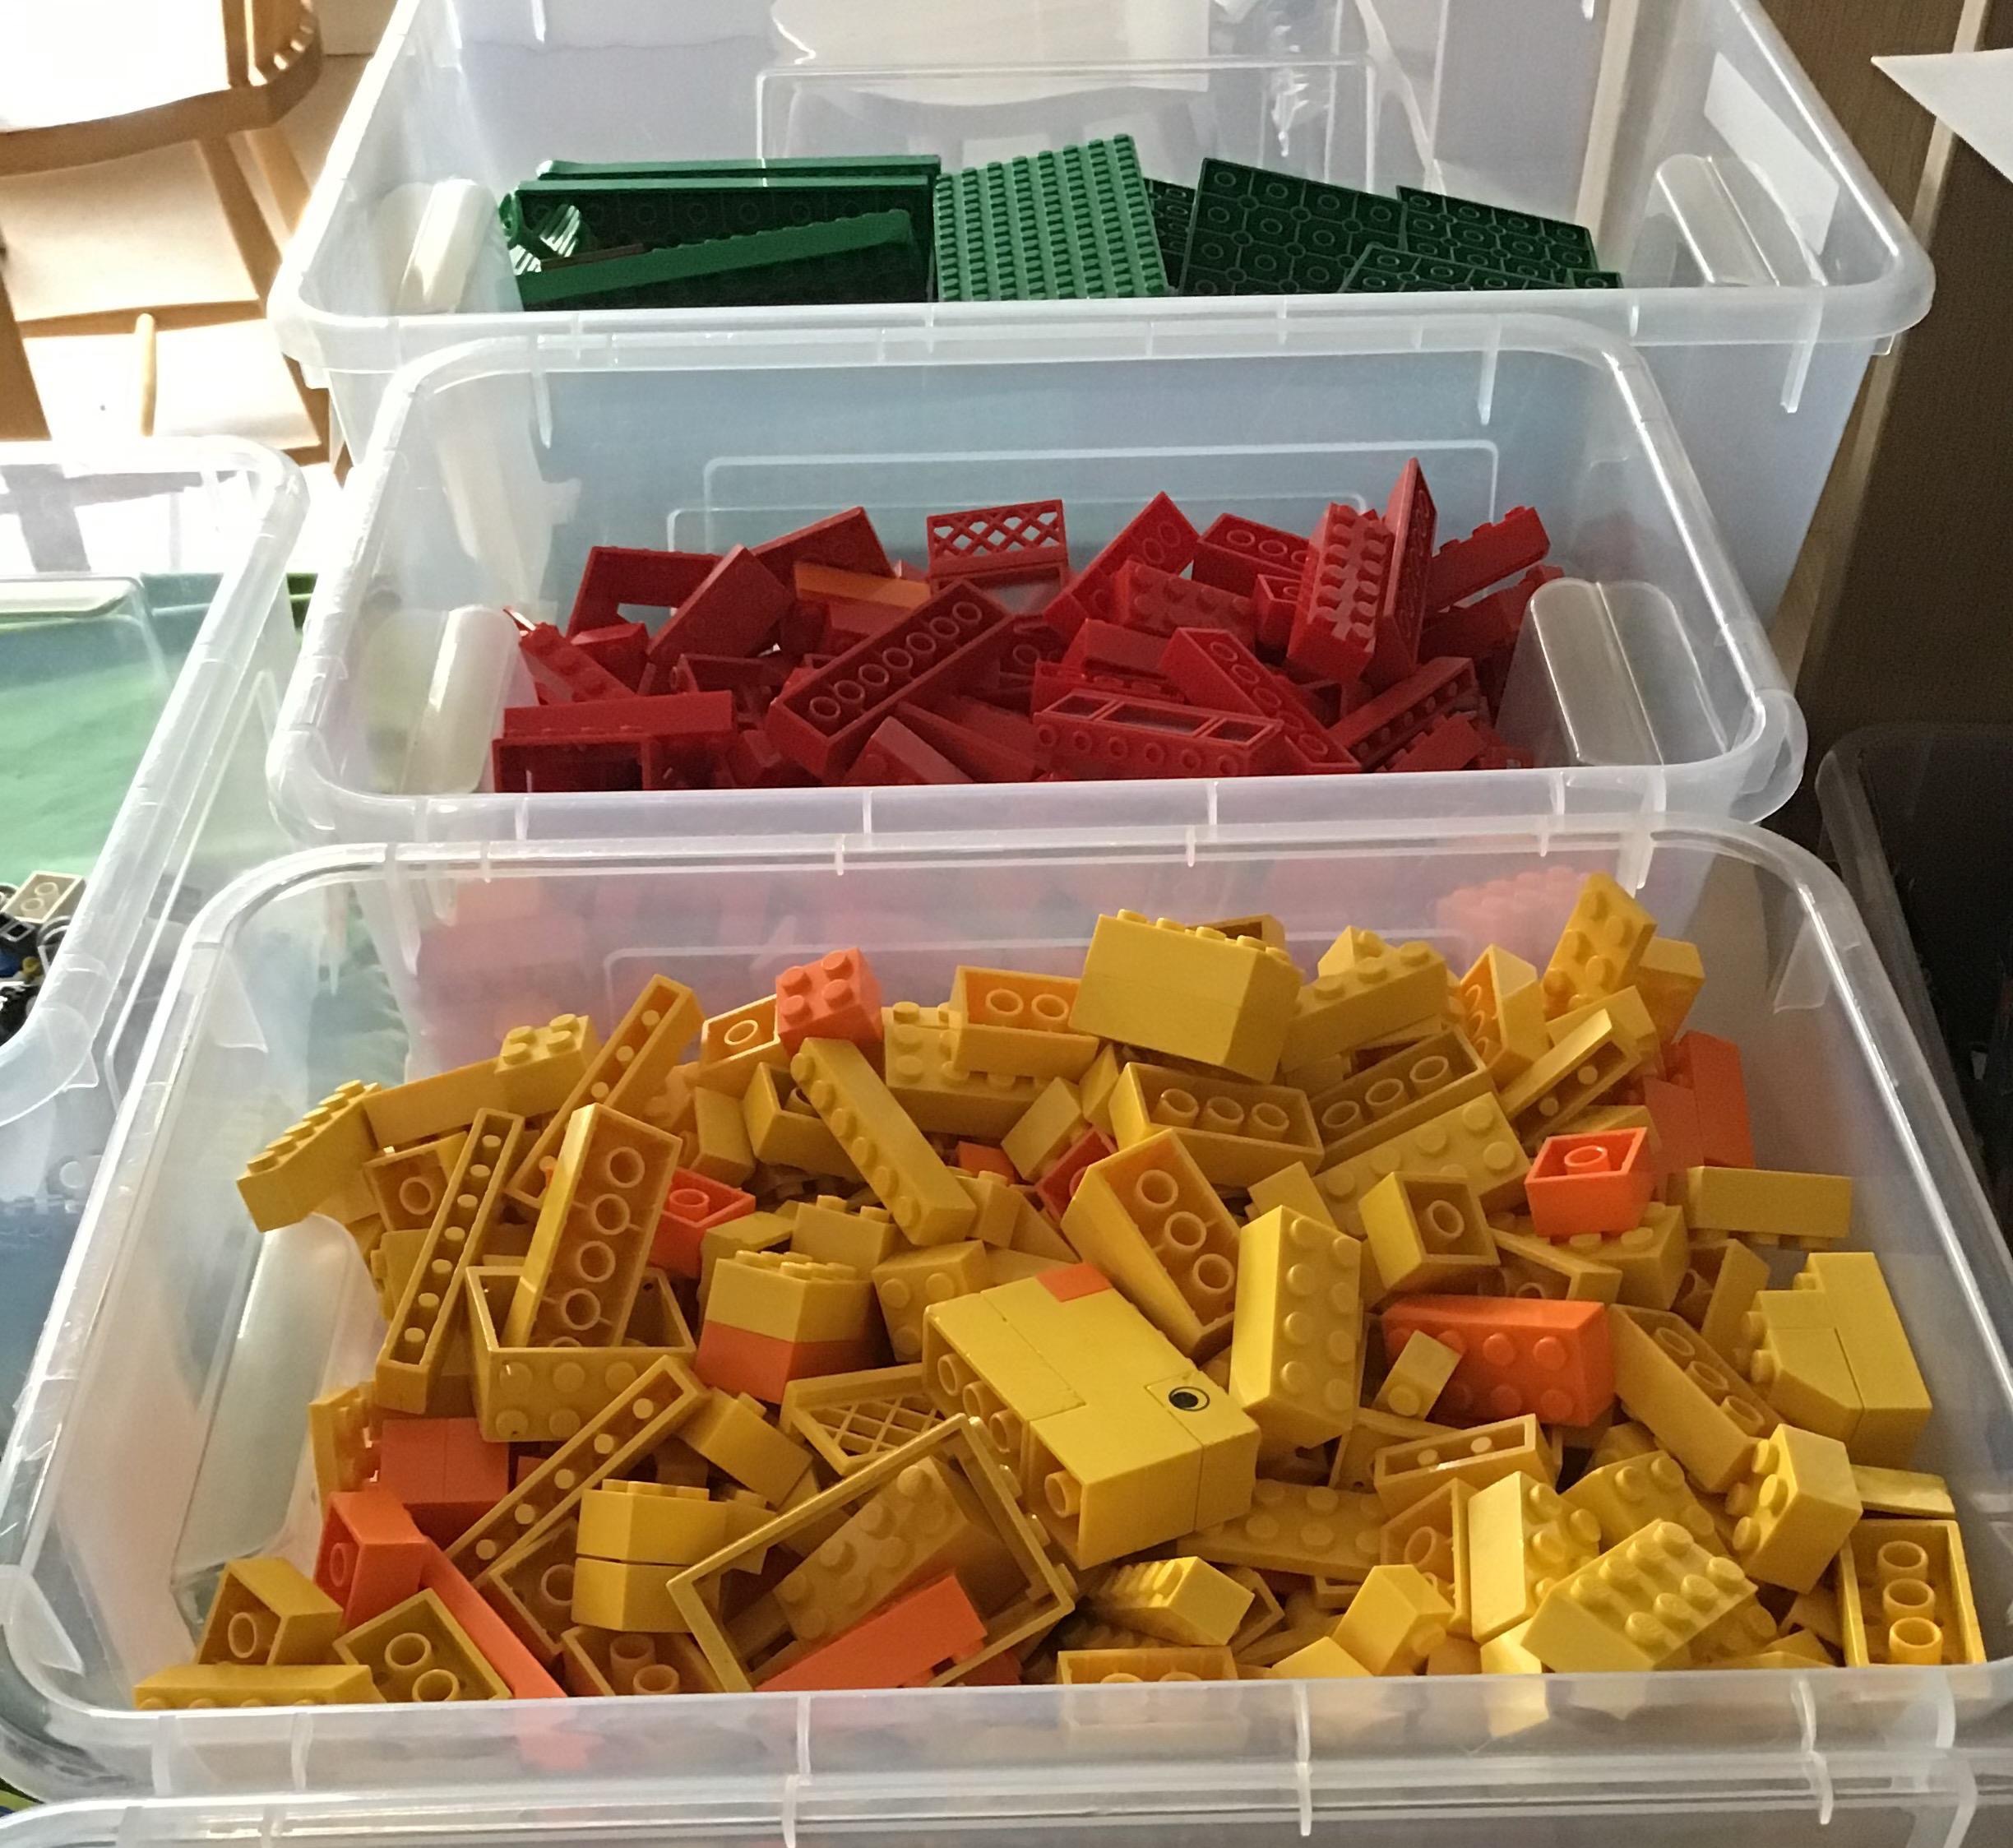 Lego uppsorterat efter färg.